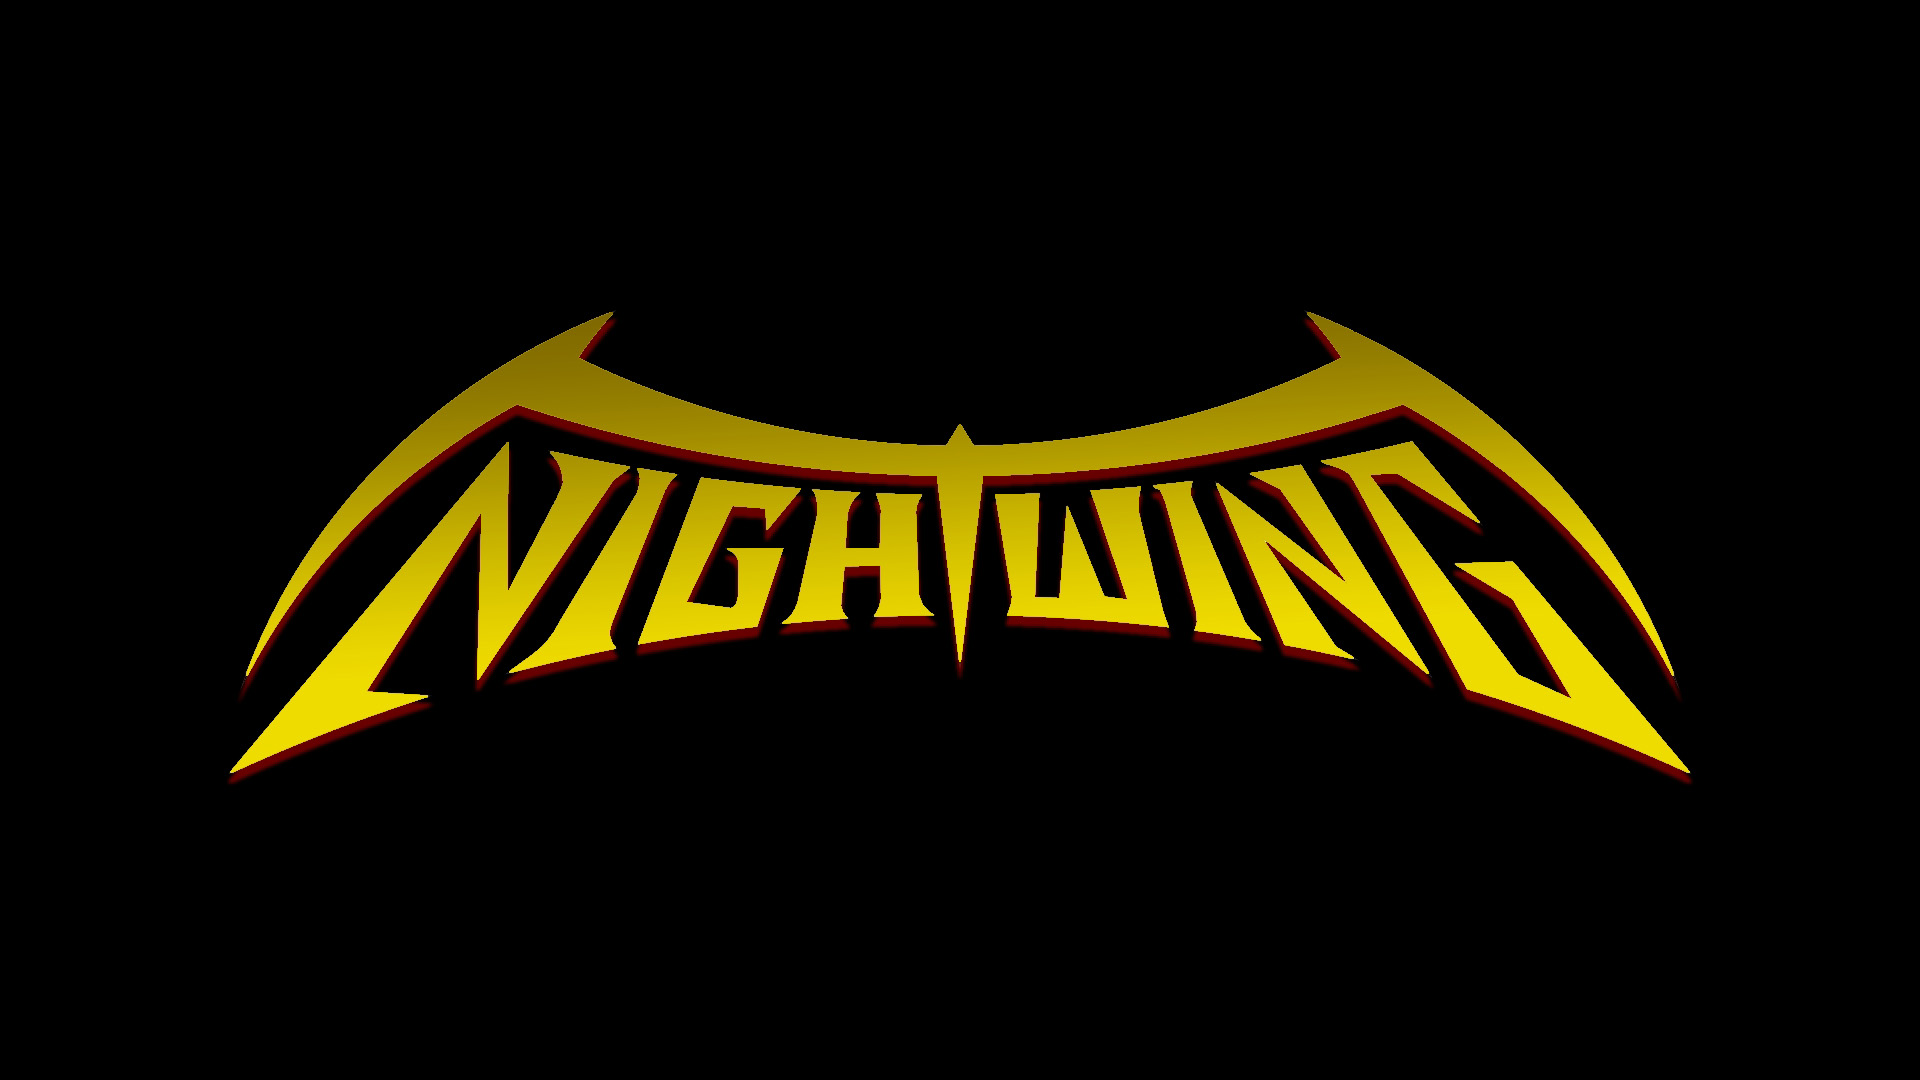 hd wallpapers batman desktop - Wallumi  Batman wallpaper, Nightwing  wallpaper, Logo wallpaper hd